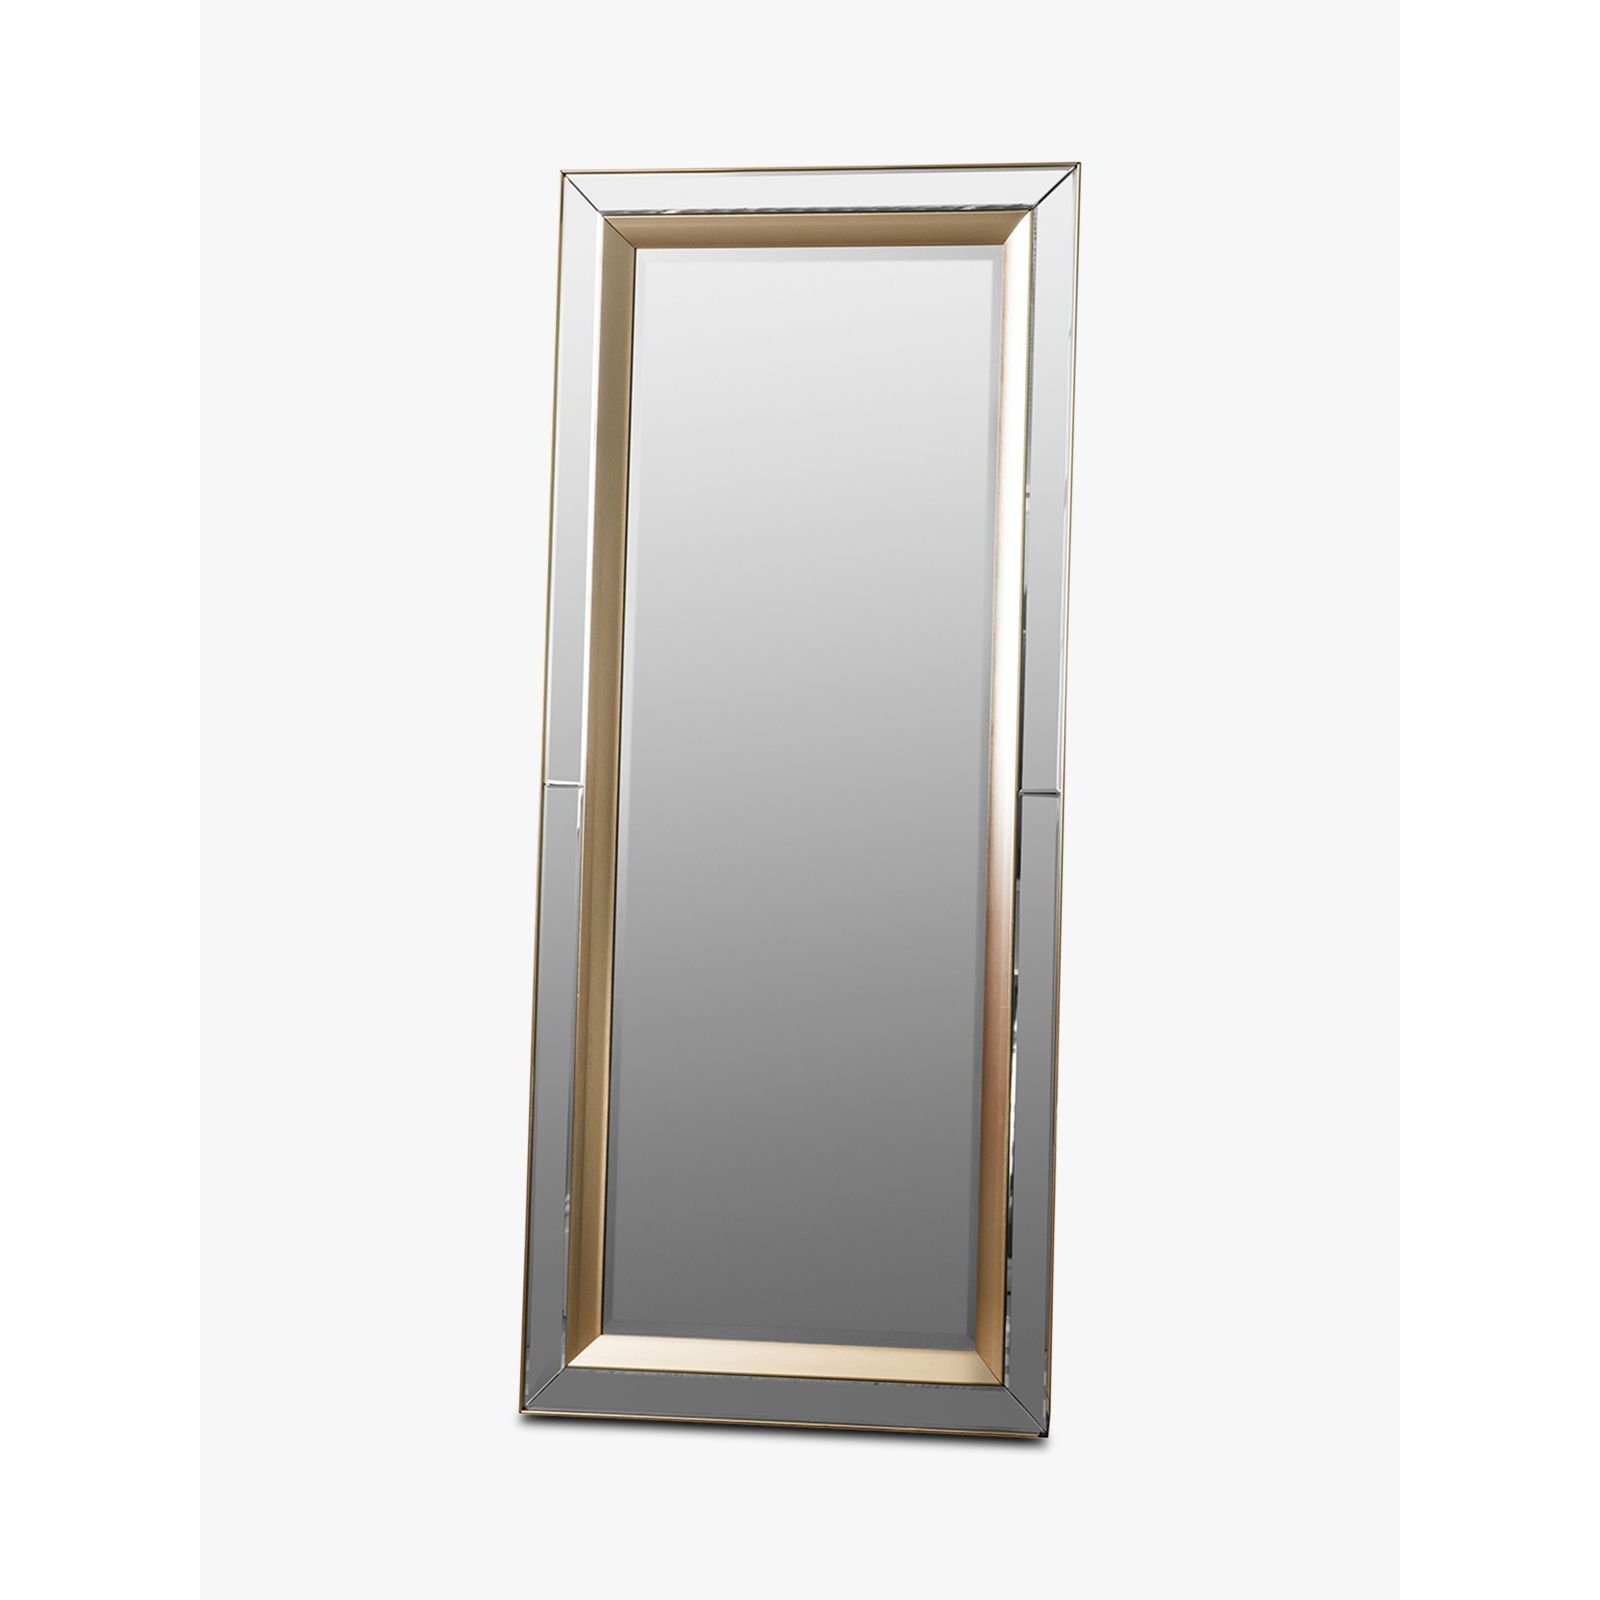 Gallery Direct Phantom Rectangular Frame Leaner Mirror, 158 x 69cm, Gold